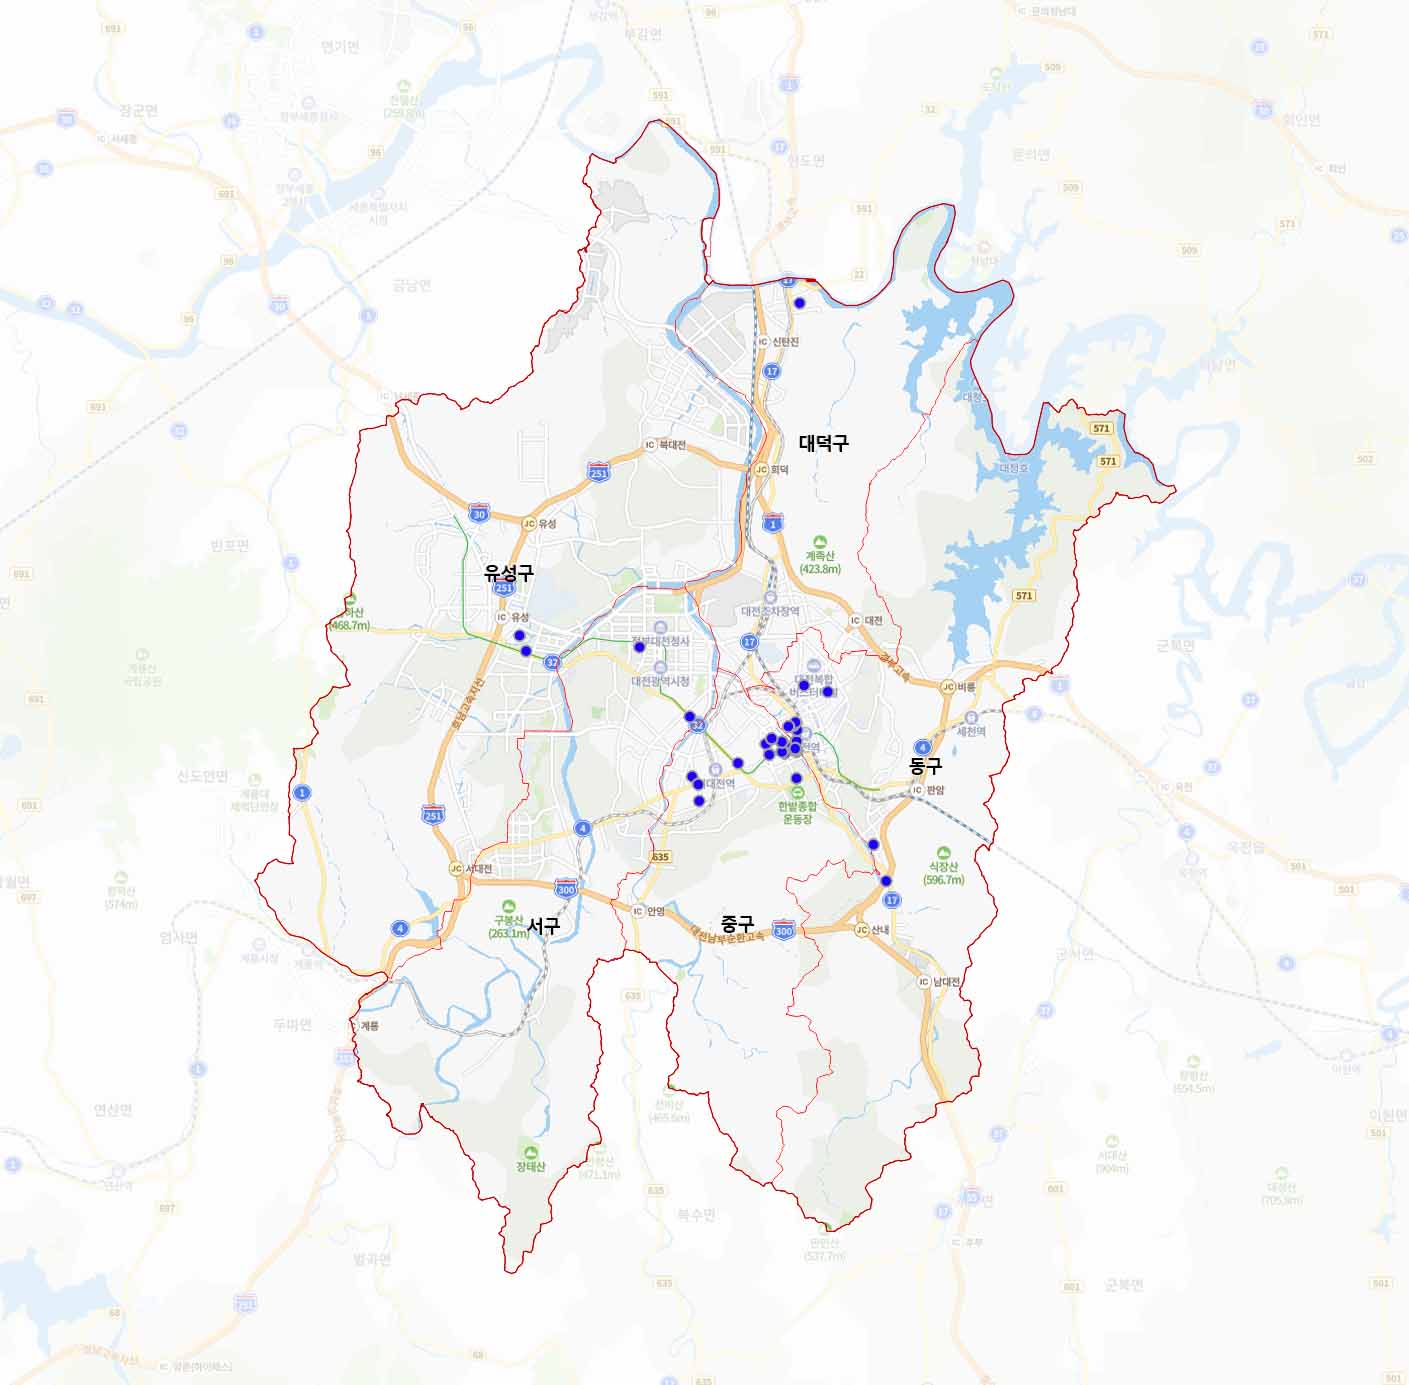 대전광역시의 지도위에 파란점으로 분포도가 나타나있는 이미지이다.